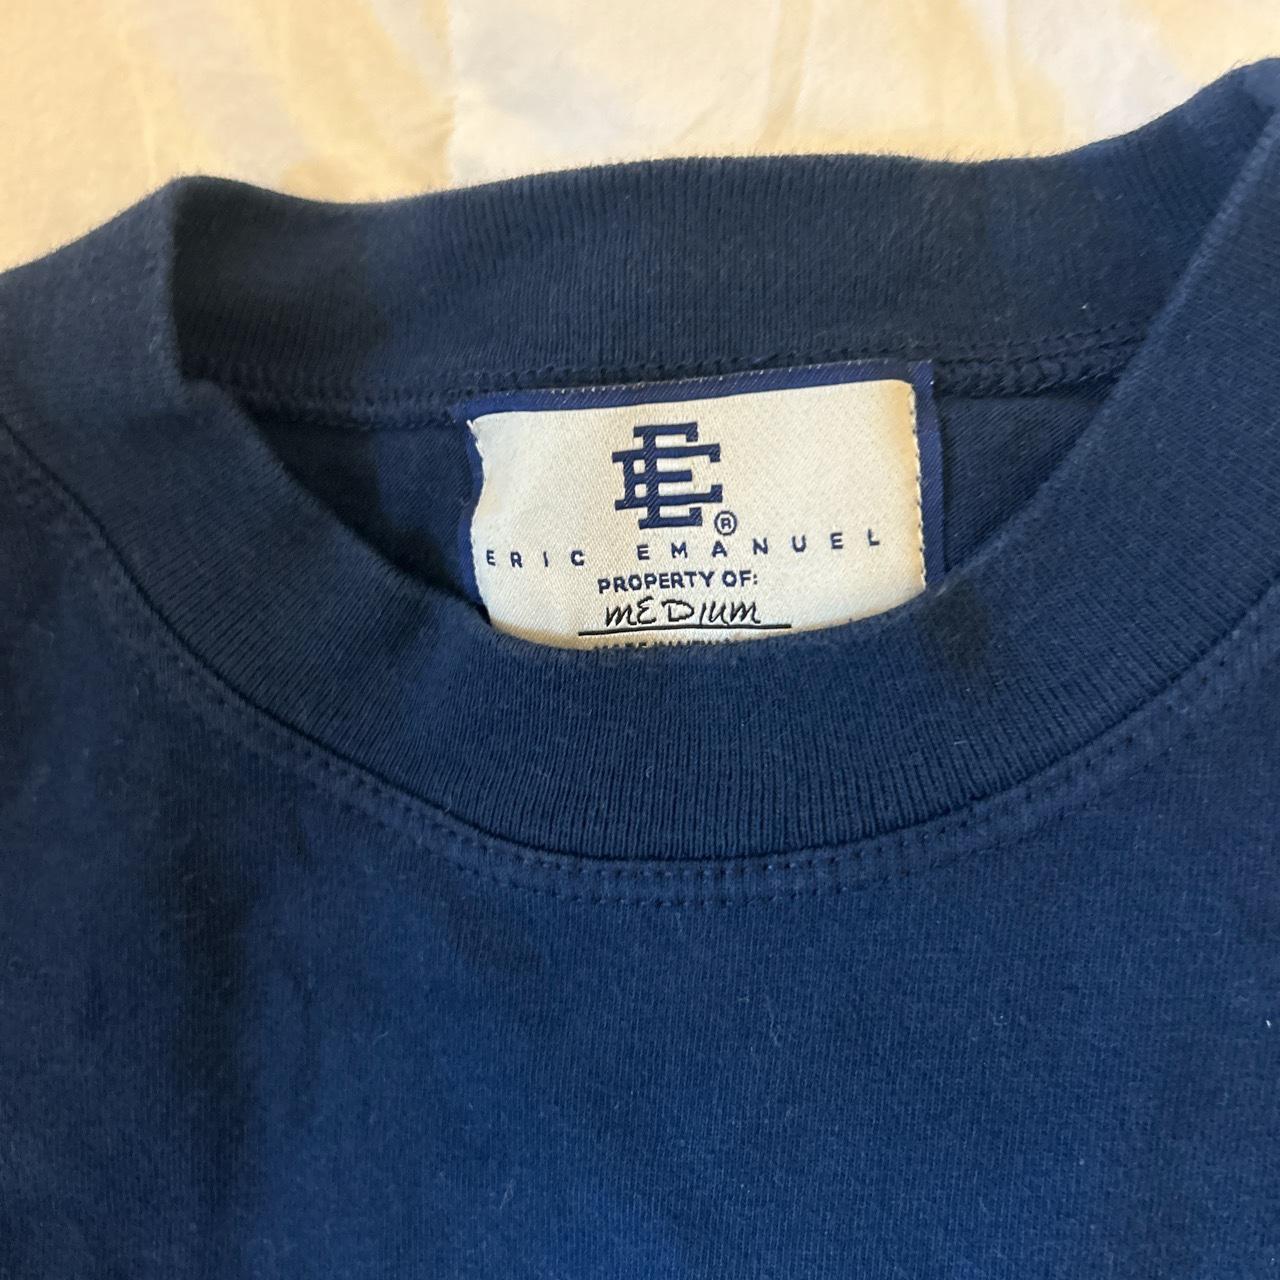 Eric Emanuel Men's T-Shirt - Navy - L